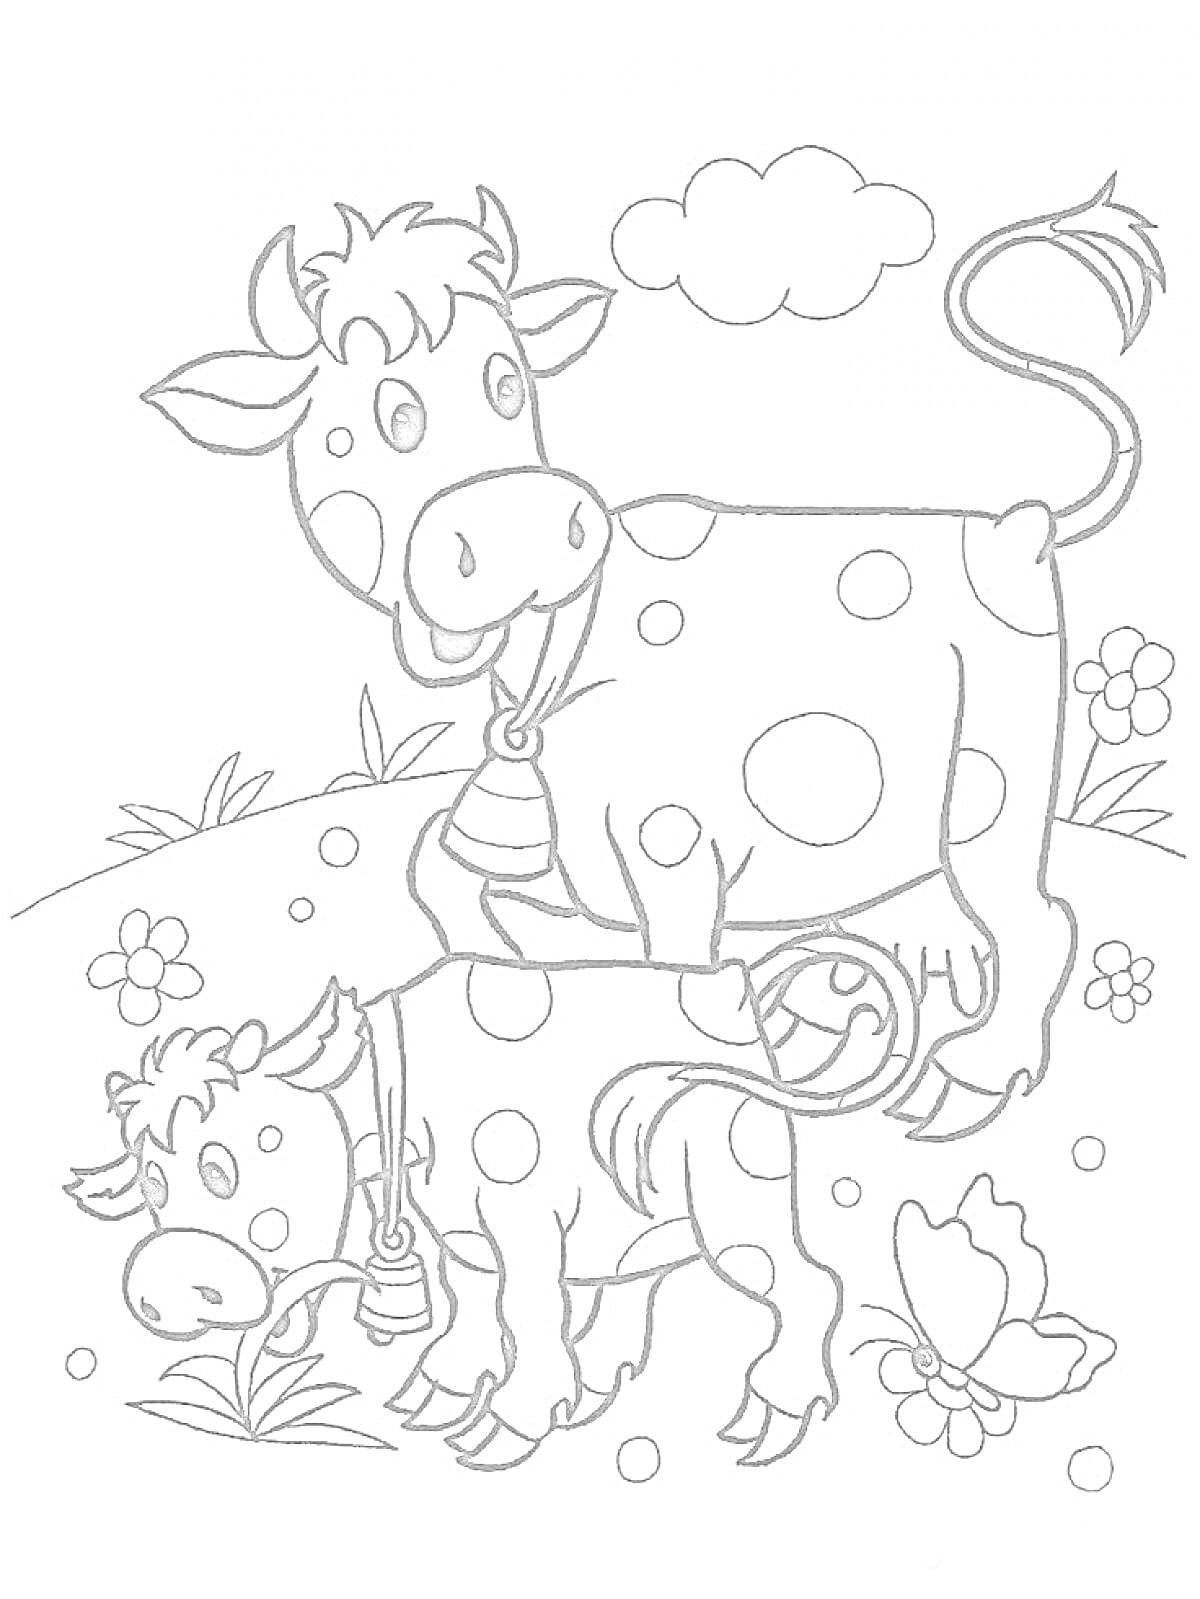 Корова и теленок на лугу с цветами и бабочкой под облаком